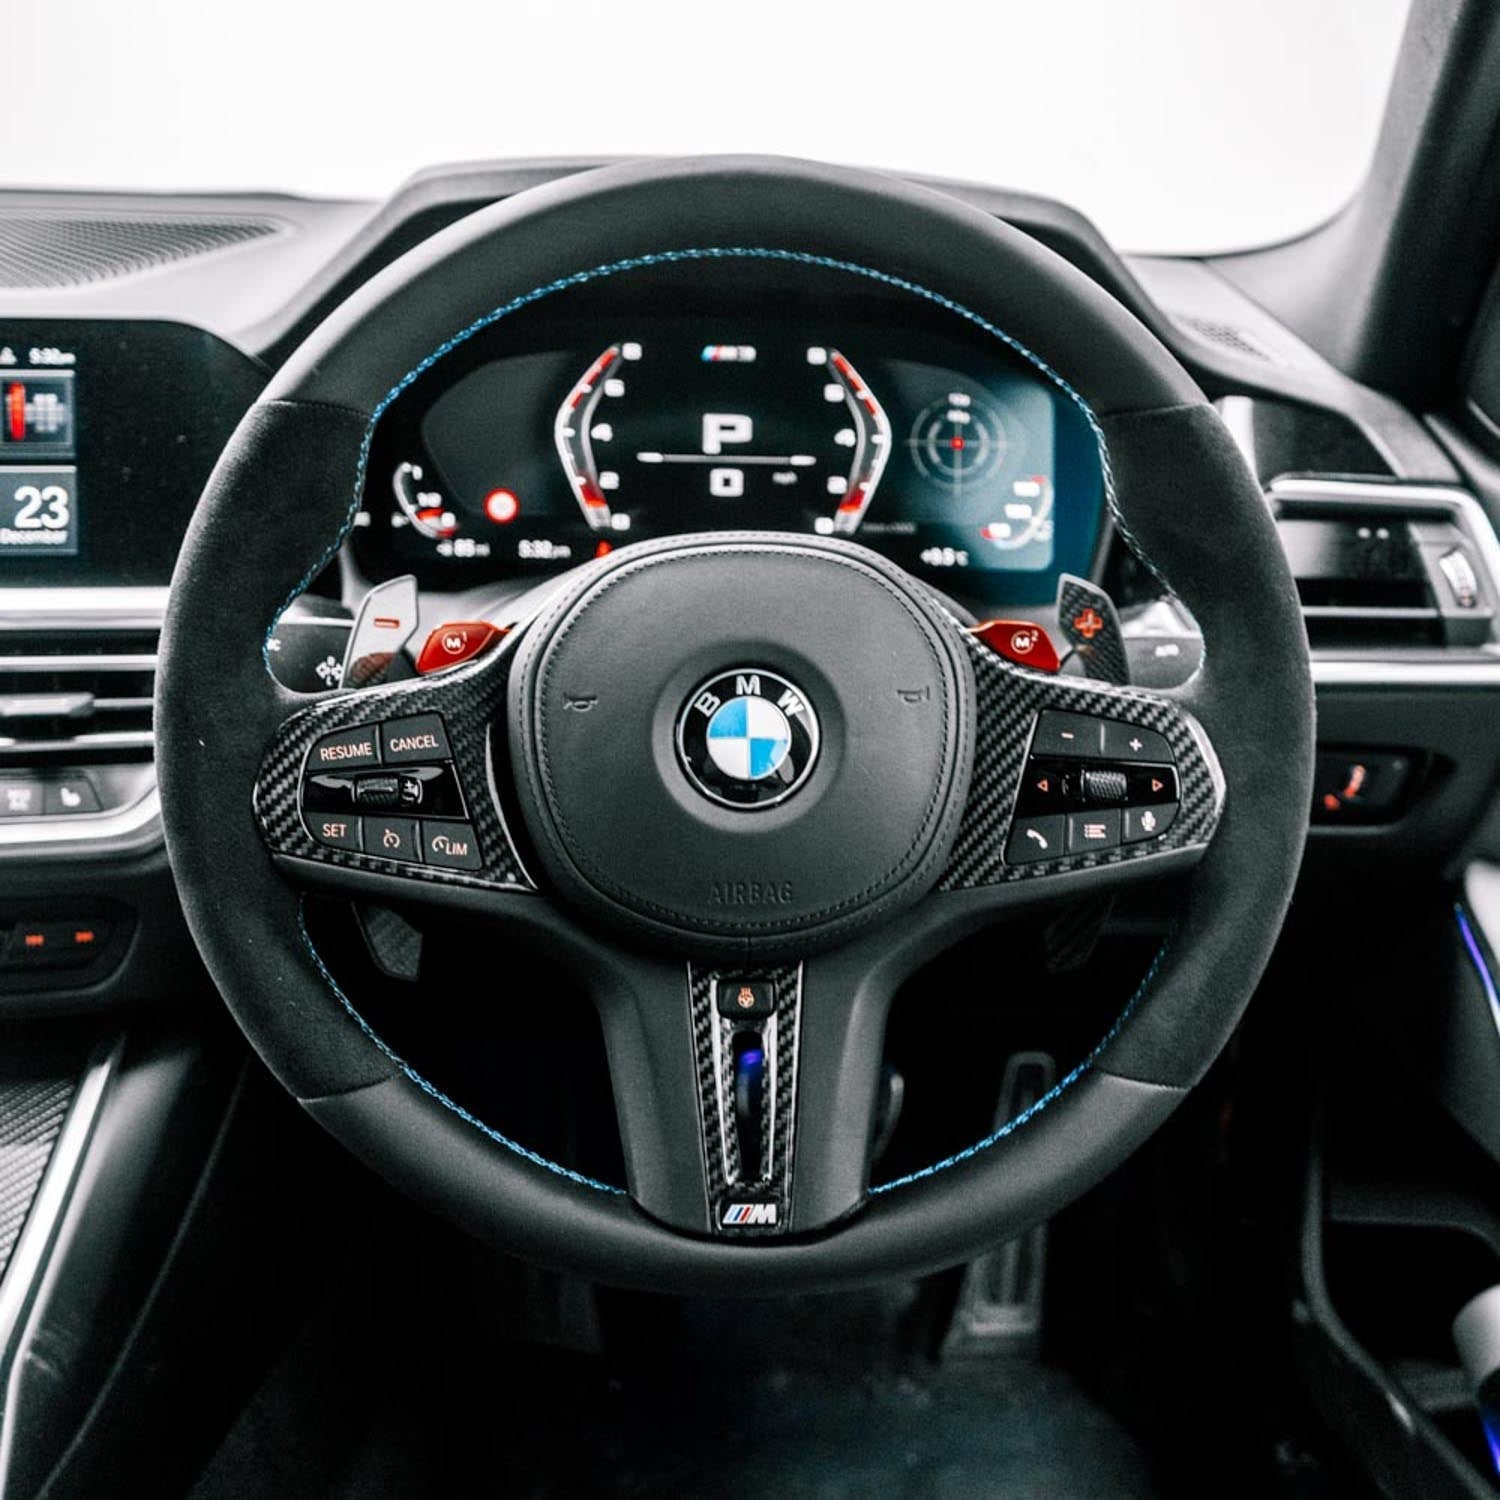 SHFT BMW M3/M4 Round Steering Wheel In Alcantara & Leather (G80/G82/G83)-R44 Performance